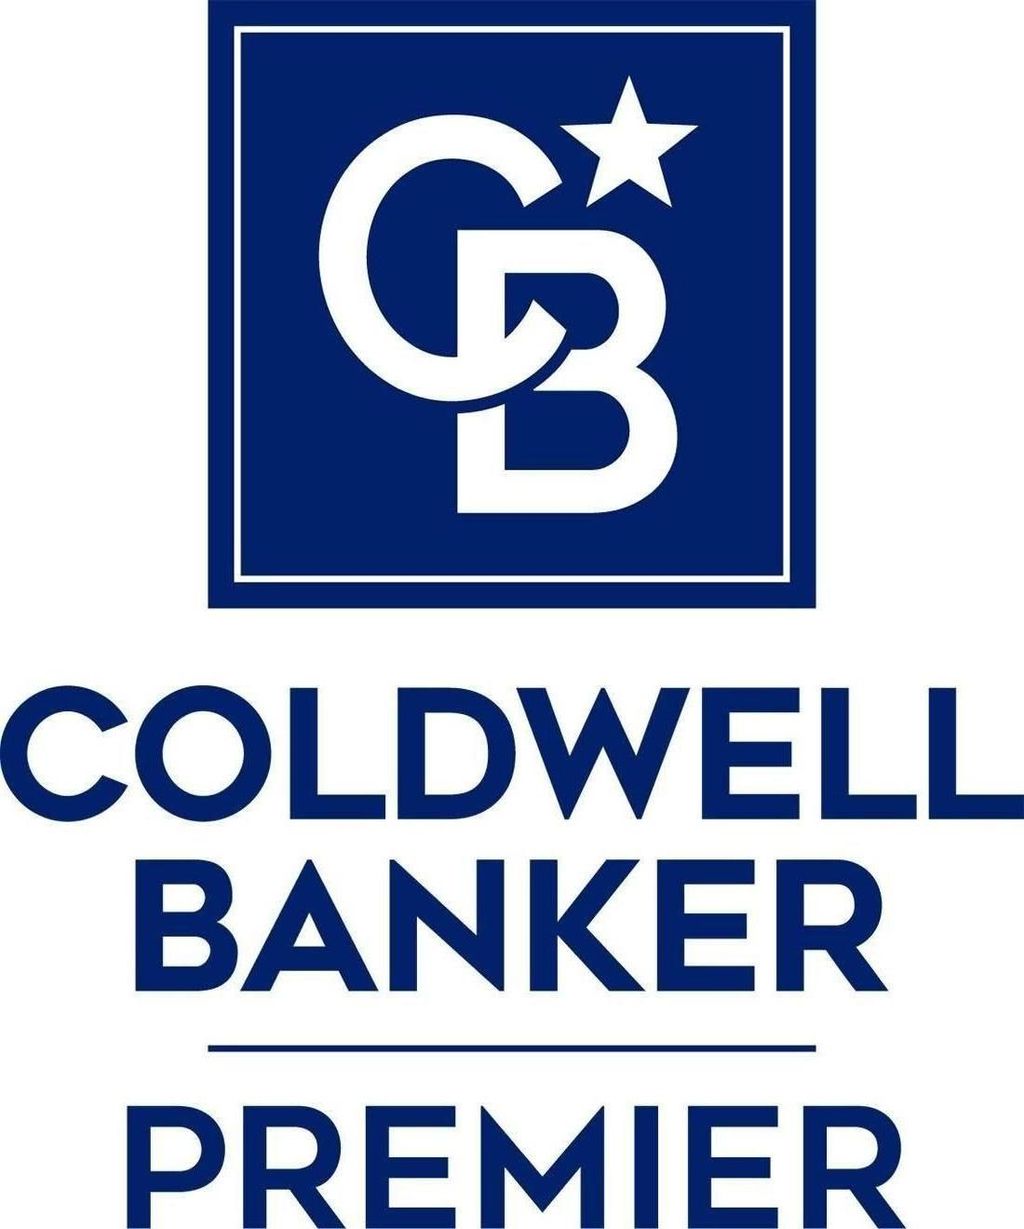 Coldwell Banker Premier Property Management